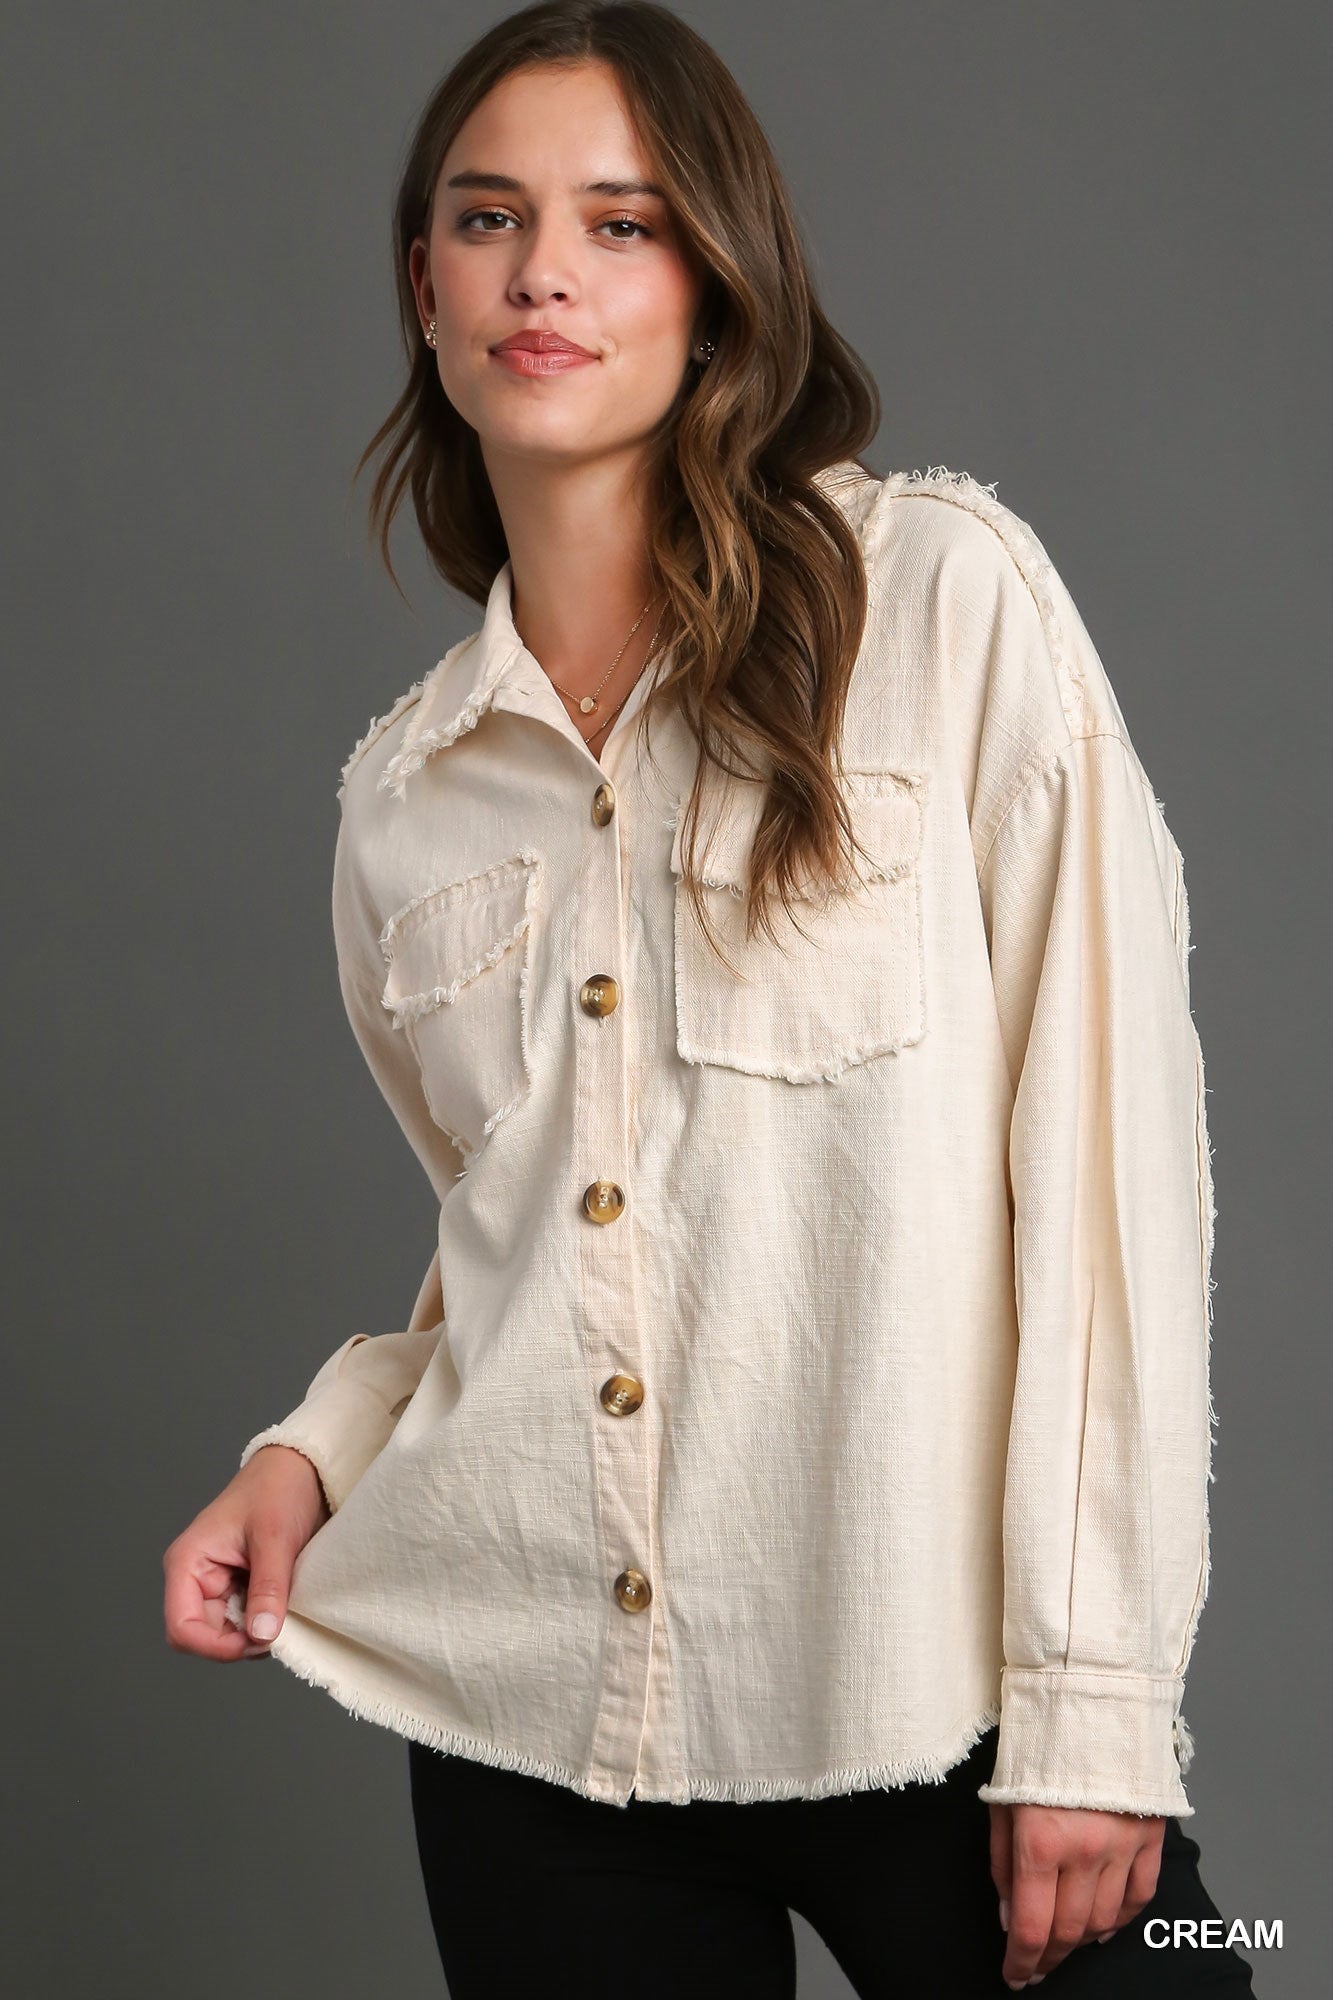 Cotton Overshirt Jacket in size Large